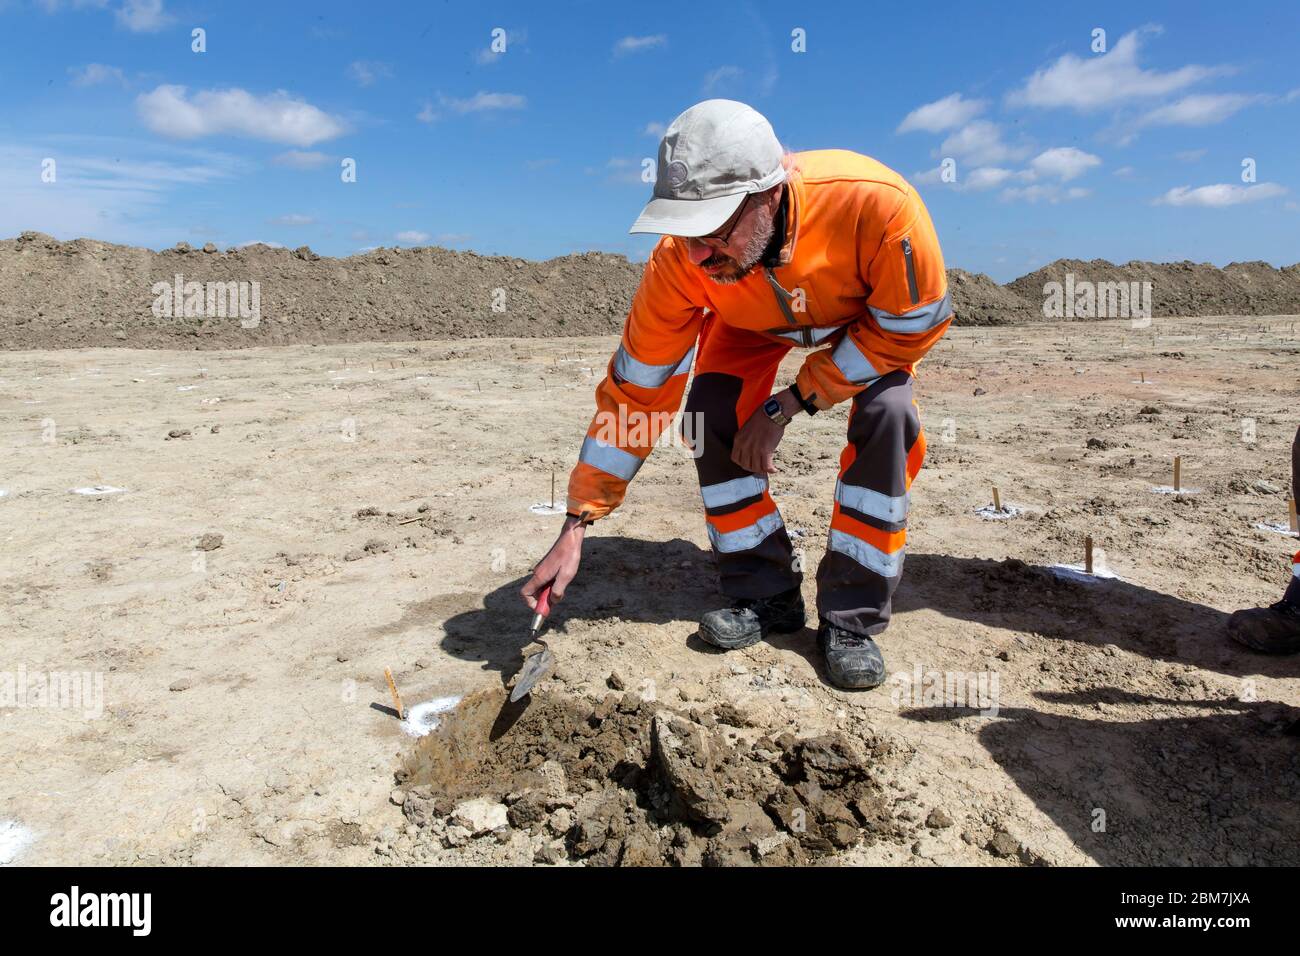 RODBY, DANEMARK - 06 MAI 2020 : archéologue du Musée Lolland-Falster au Danemark, Søren Jensen, Au travail avec sa truelle en briques à la fosse d'excavation de 1 km de long et de 15 m de large qui ont révélé une ceinture de défense de l'âge de fer de 2.000 ans au site de construction du tunnel de Fehmernbelt qui va bientôt venir dans le sud-est du Danemark, sur le littoral de la mer Baltique. La ligne de défense se compose de quelque 5.000 trous, probablement avec des pics de chêne pointus cachés ainsi une force d'invasion venant de la mer, peut-être de l'Allemagne du Nord, serait blessé par des pointes pénétrant leurs pieds, ou les chevaux plongeraient au groun Banque D'Images